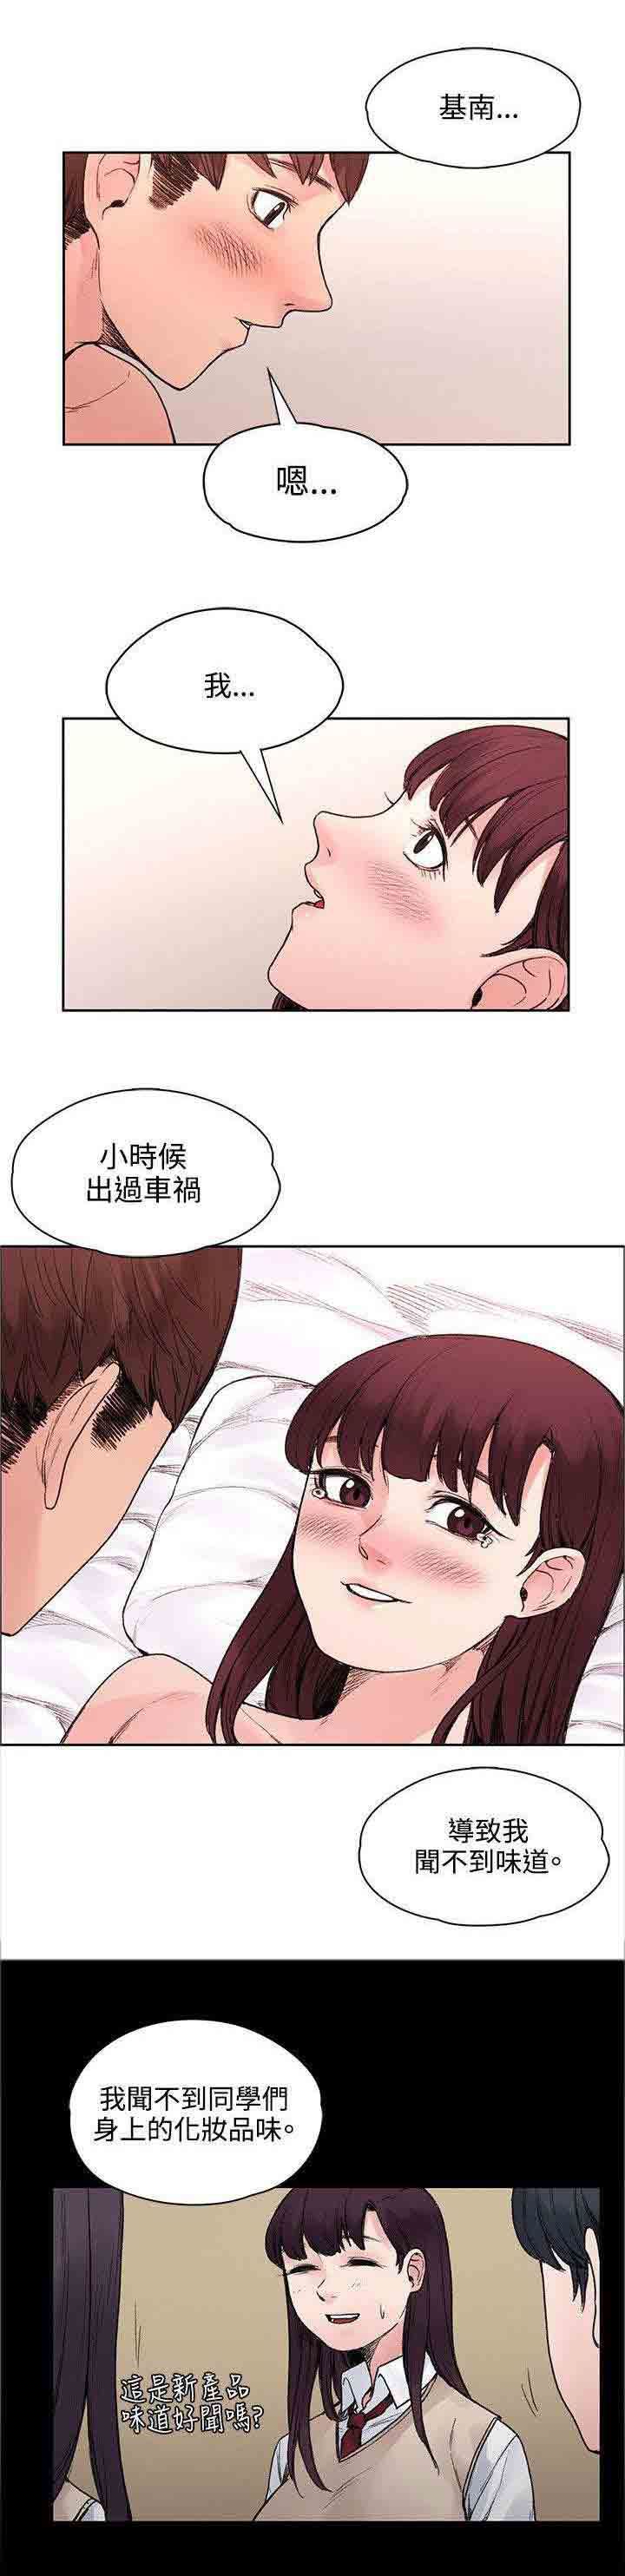 韩国污漫画 甜蜜的香氣 第46话命中注定 2